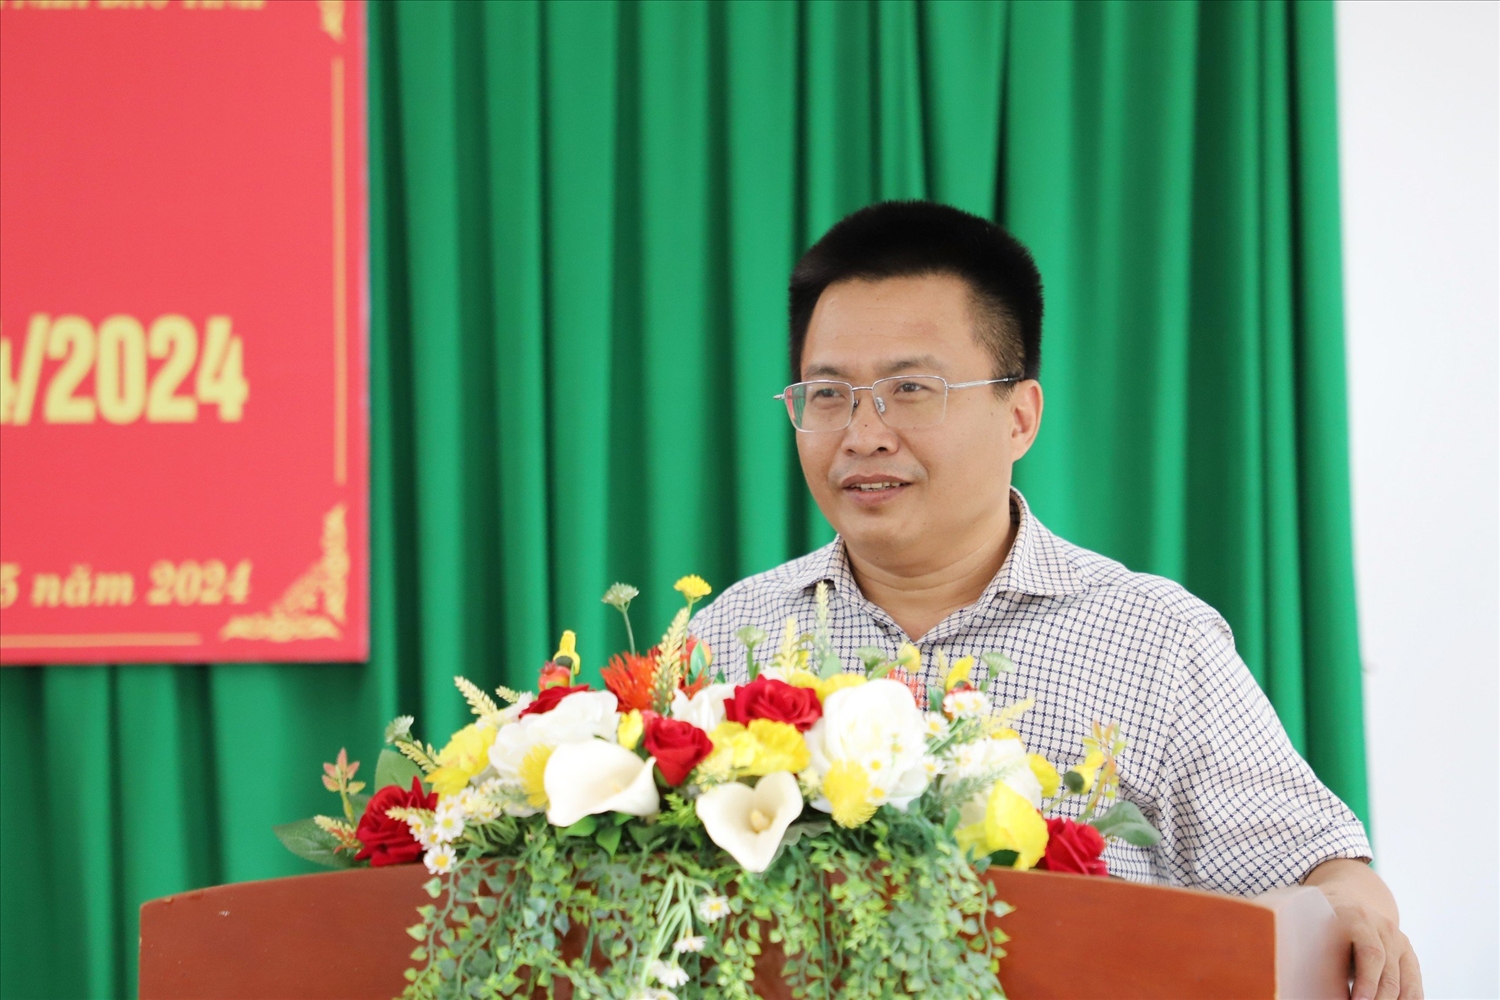 Phó Giám đốc Sở Nông nghiệp và Phát triển nông thôn tỉnh Đắk Nông Lê Quang Dần báo cáo tại hội nghị